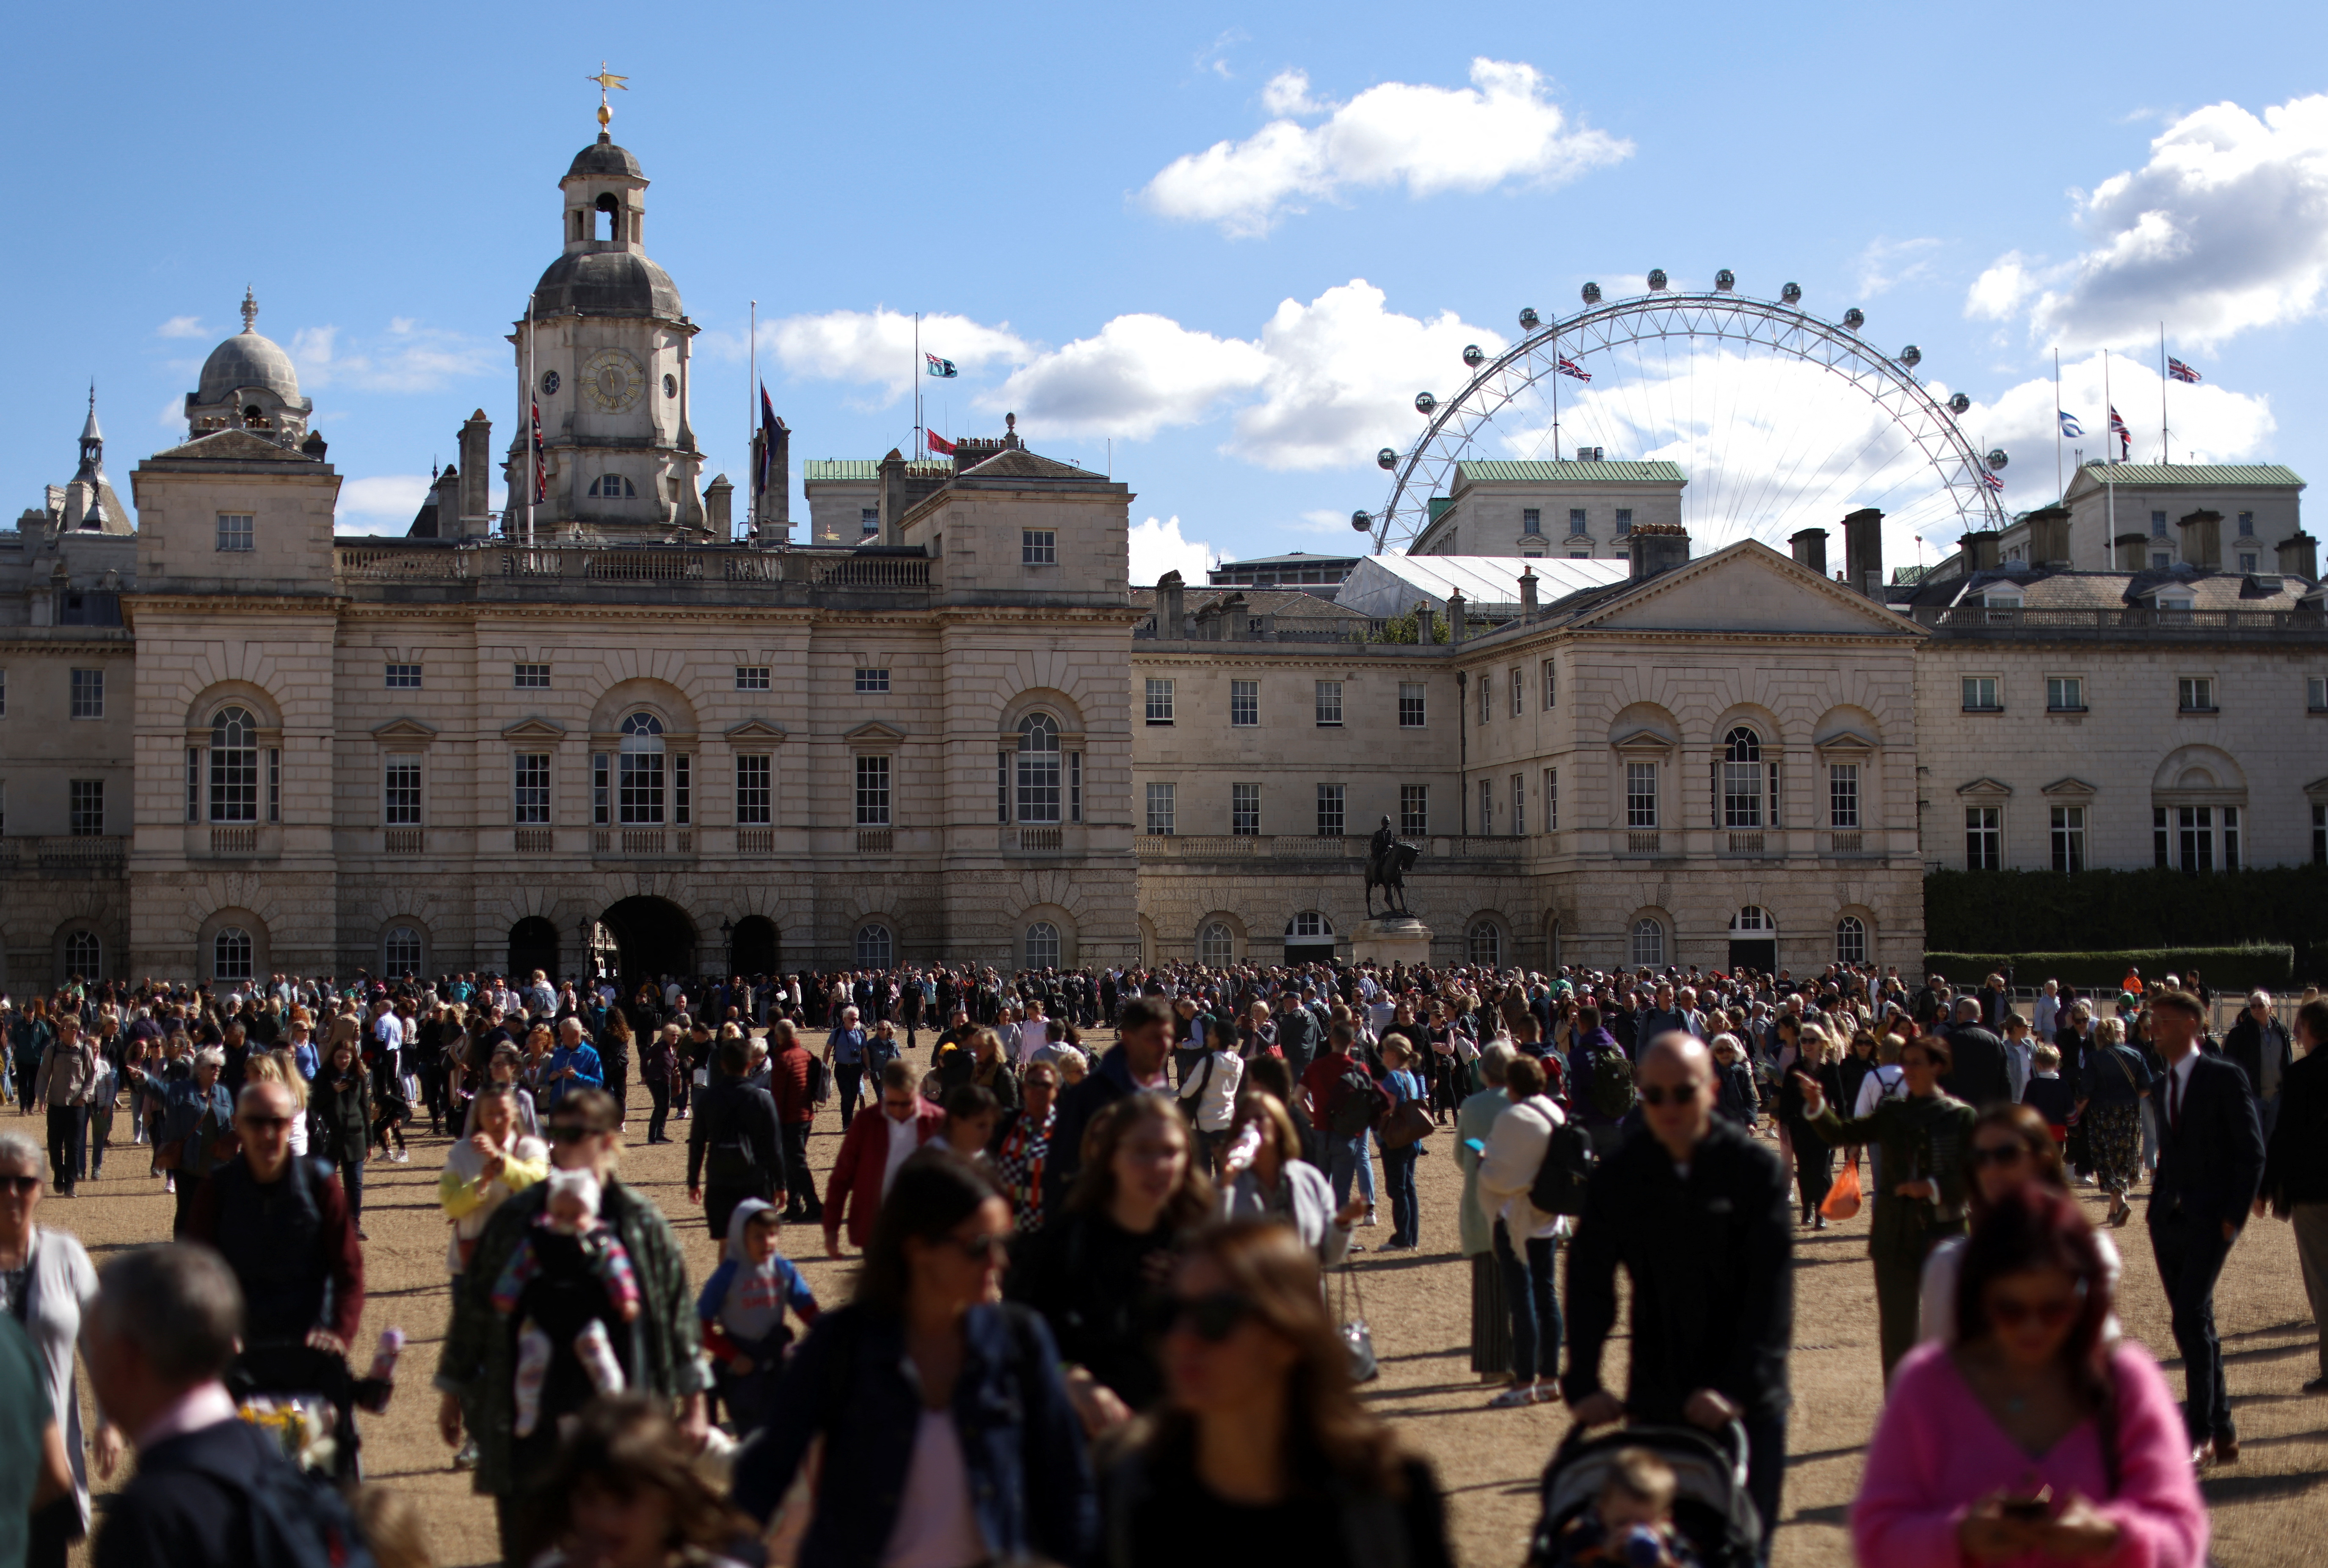 La multitud abandona el Horse Guards Parade después del cambio de guardia, tras la muerte de la reina Isabel de Inglaterra, en Londres, Gran Bretaña 16 de septiembre de 2022. REUTERS/Tom Nicholson